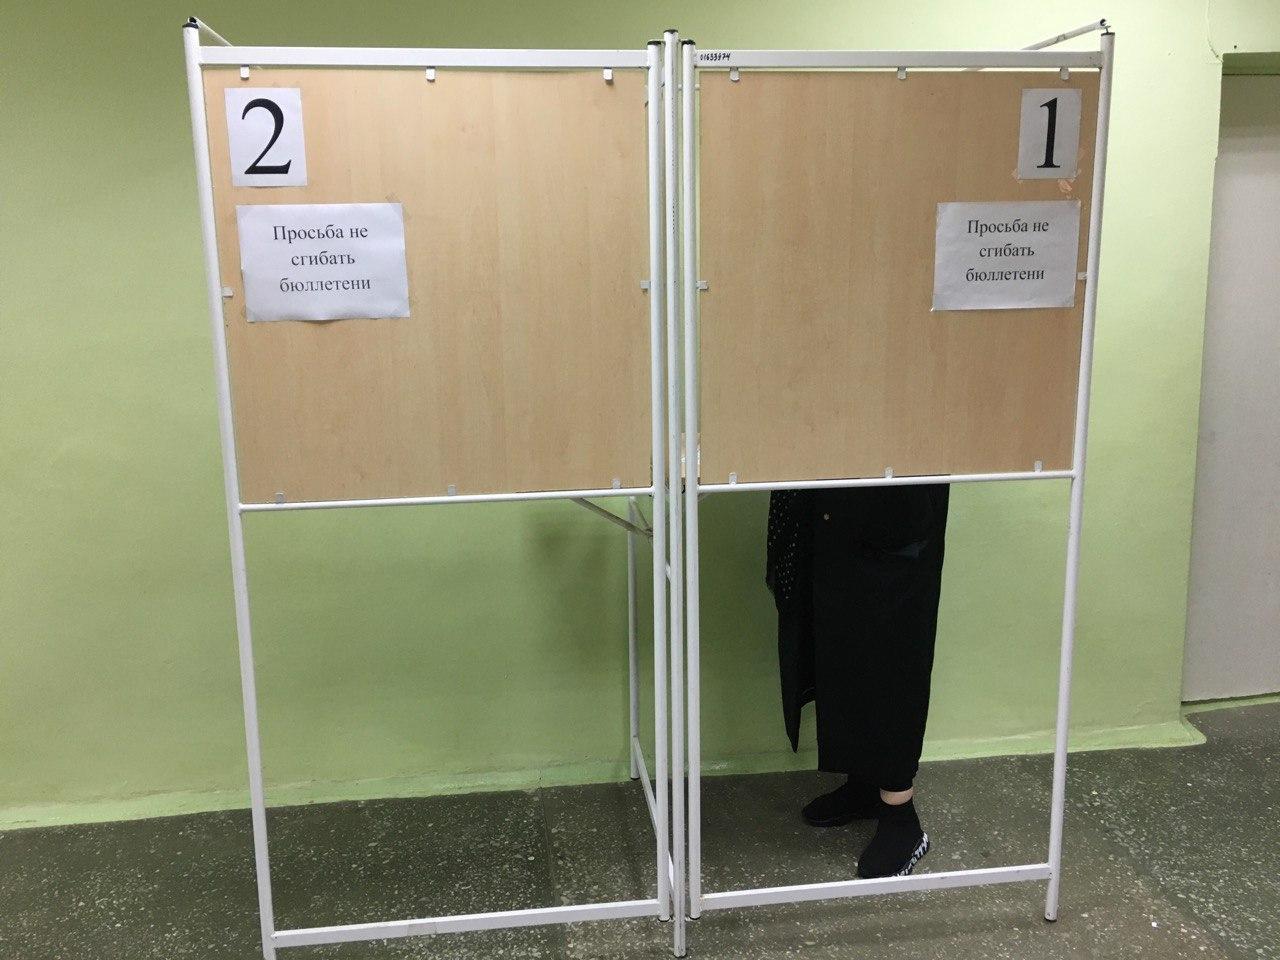 Явка на выборах в калужской области. Досрочное голосование 23.